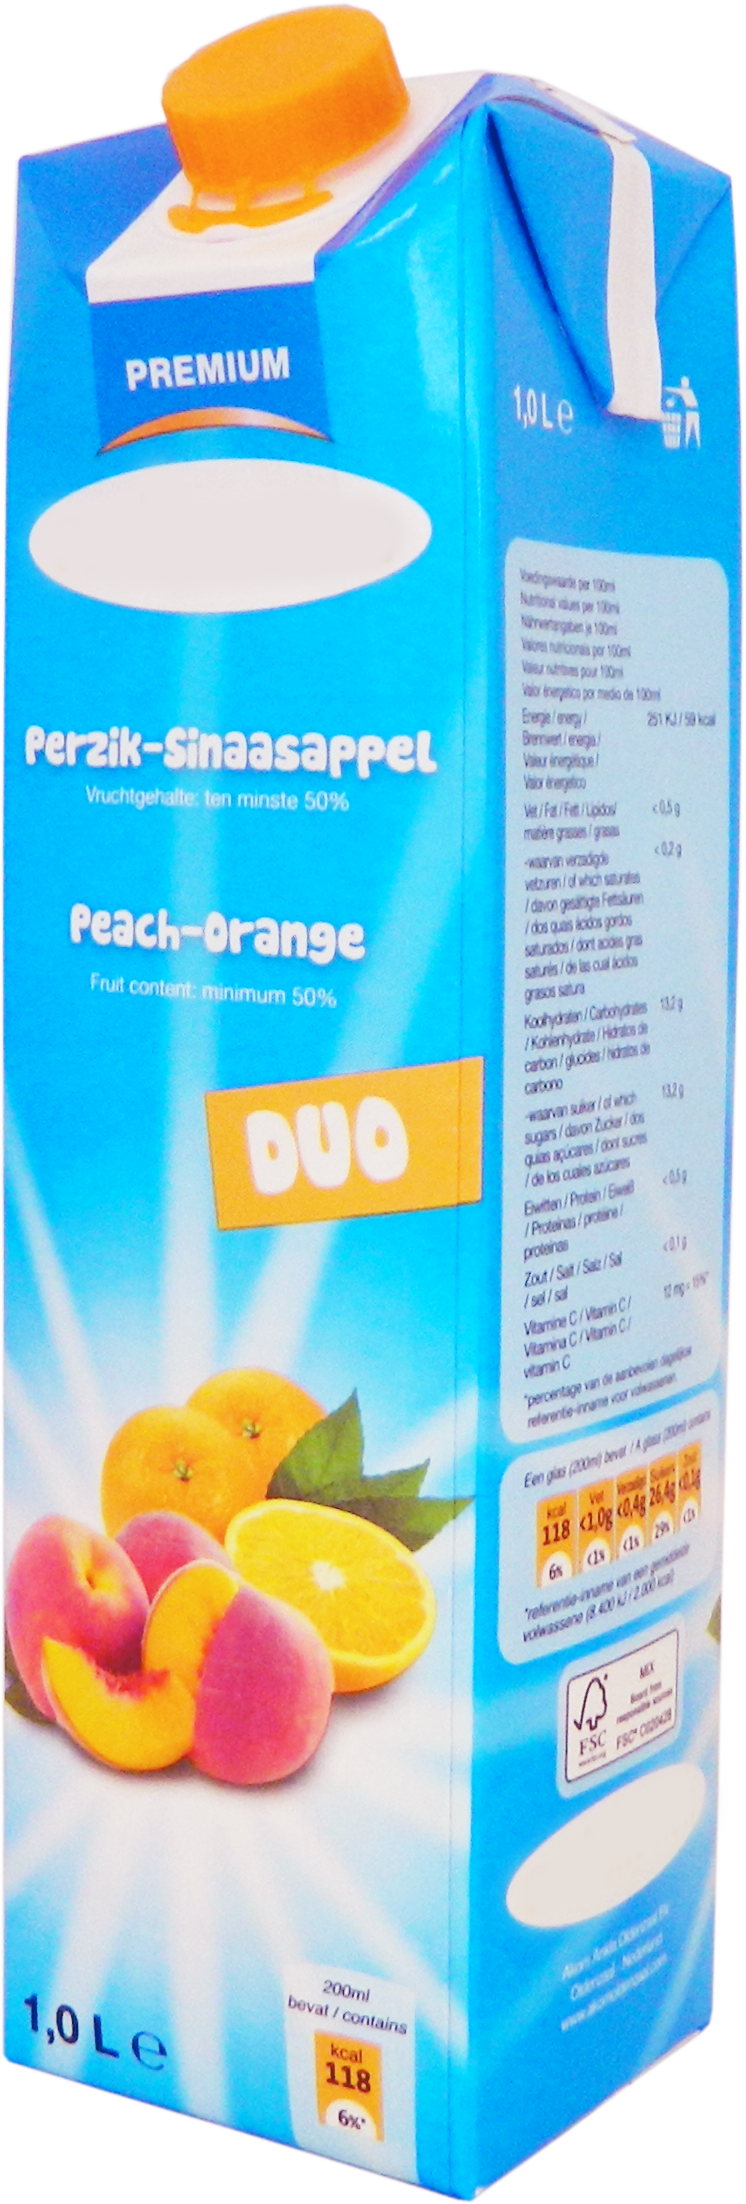 Premium  peach-orange juice 1,0 liter